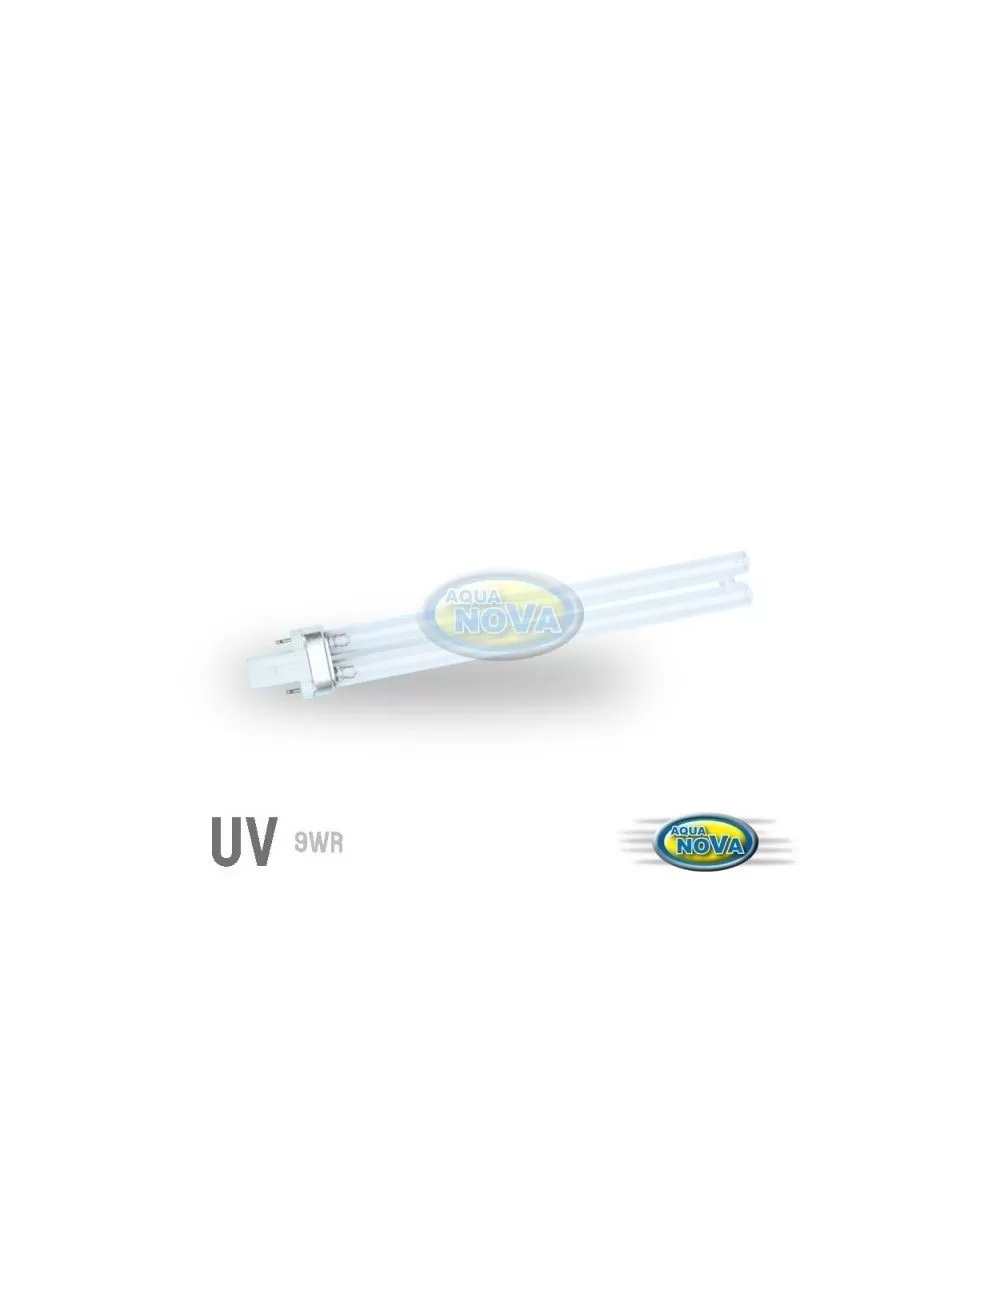 Ultraviolet (Uv) pour stériliser l'eau de votre aquarium. - Aquariofil.com  et Poisson d'Or